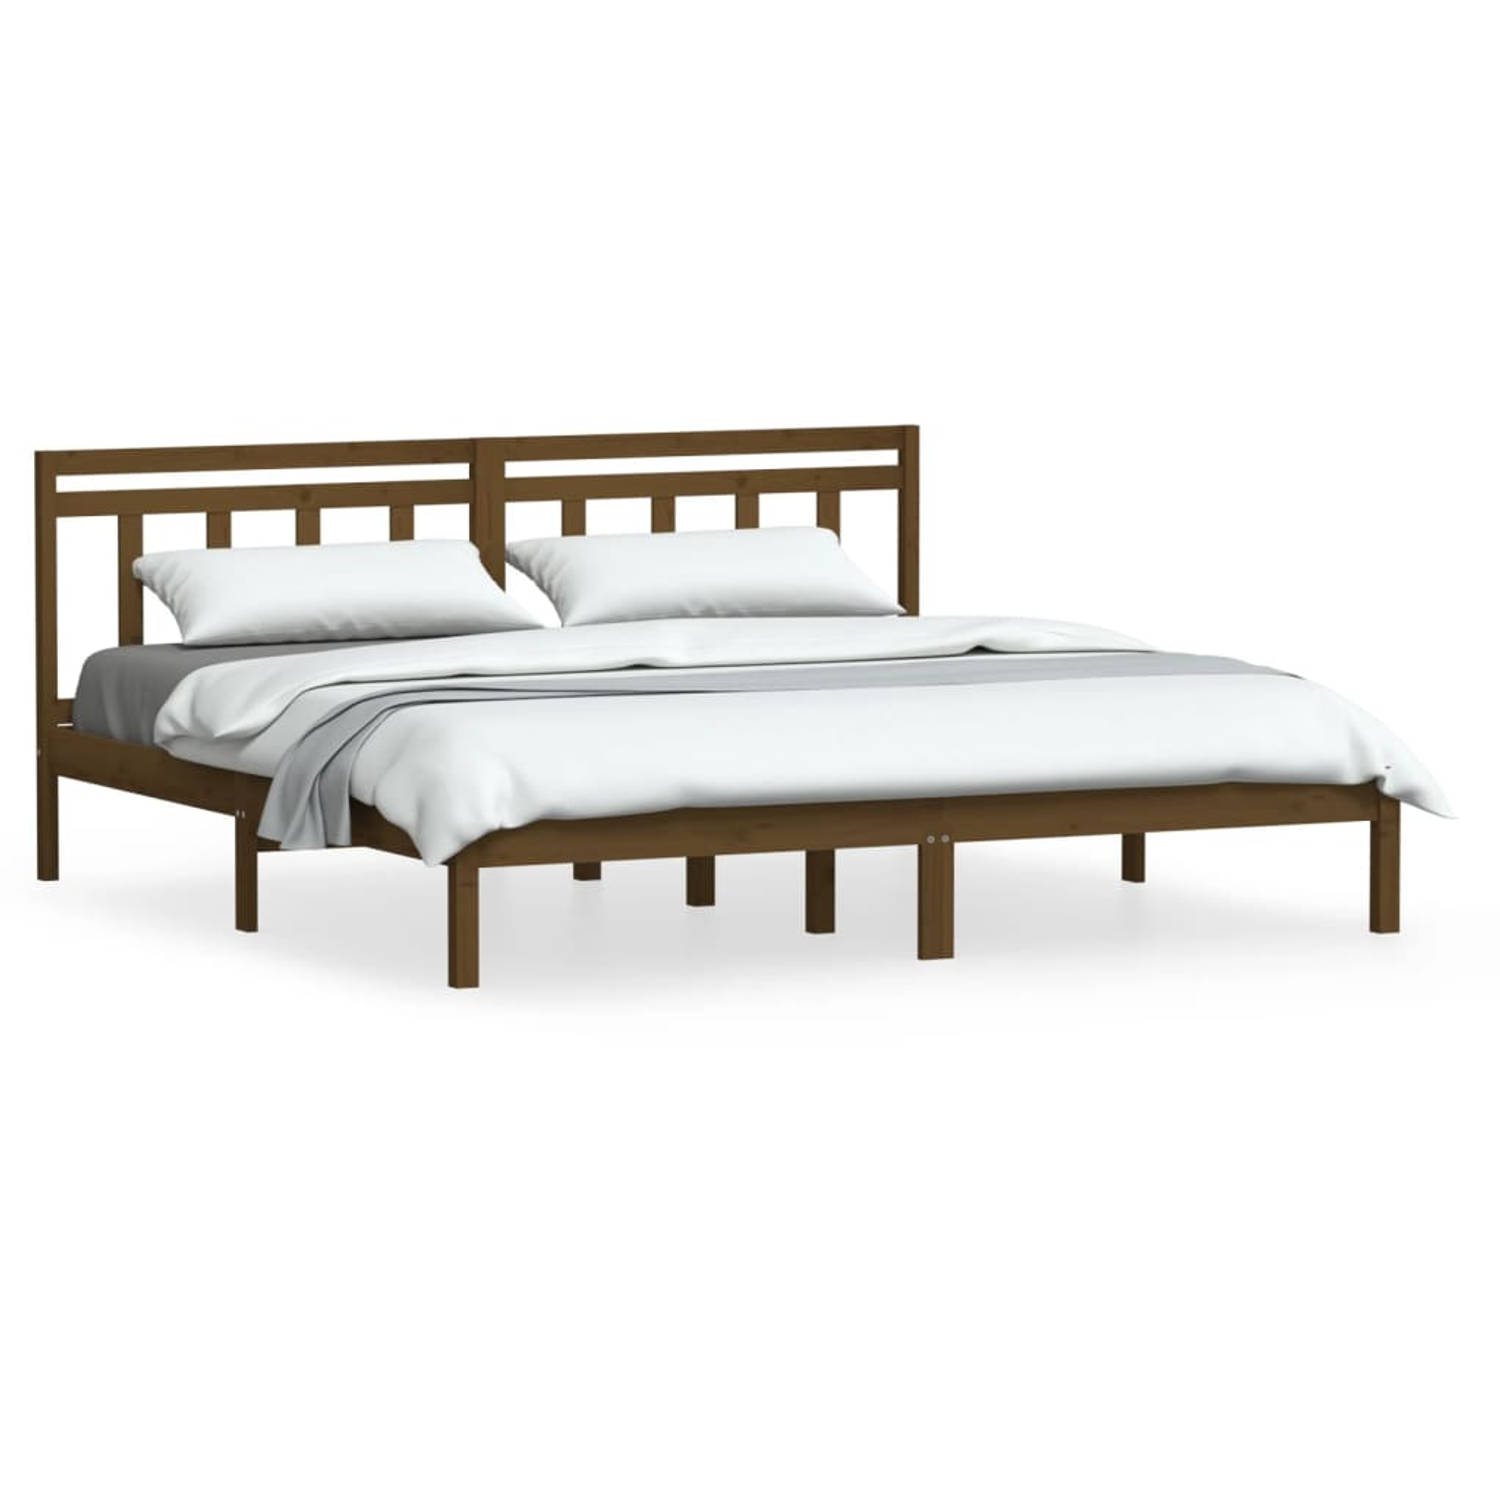 The Living Store Bedframe massief grenenhout honingbruin 160x200 cm - Bedframe - Bedframes - Tweepersoonsbed - Bed - Bedombouw - Dubbel Bed - Frame - Bed Frame - Ledikant - Bedfram